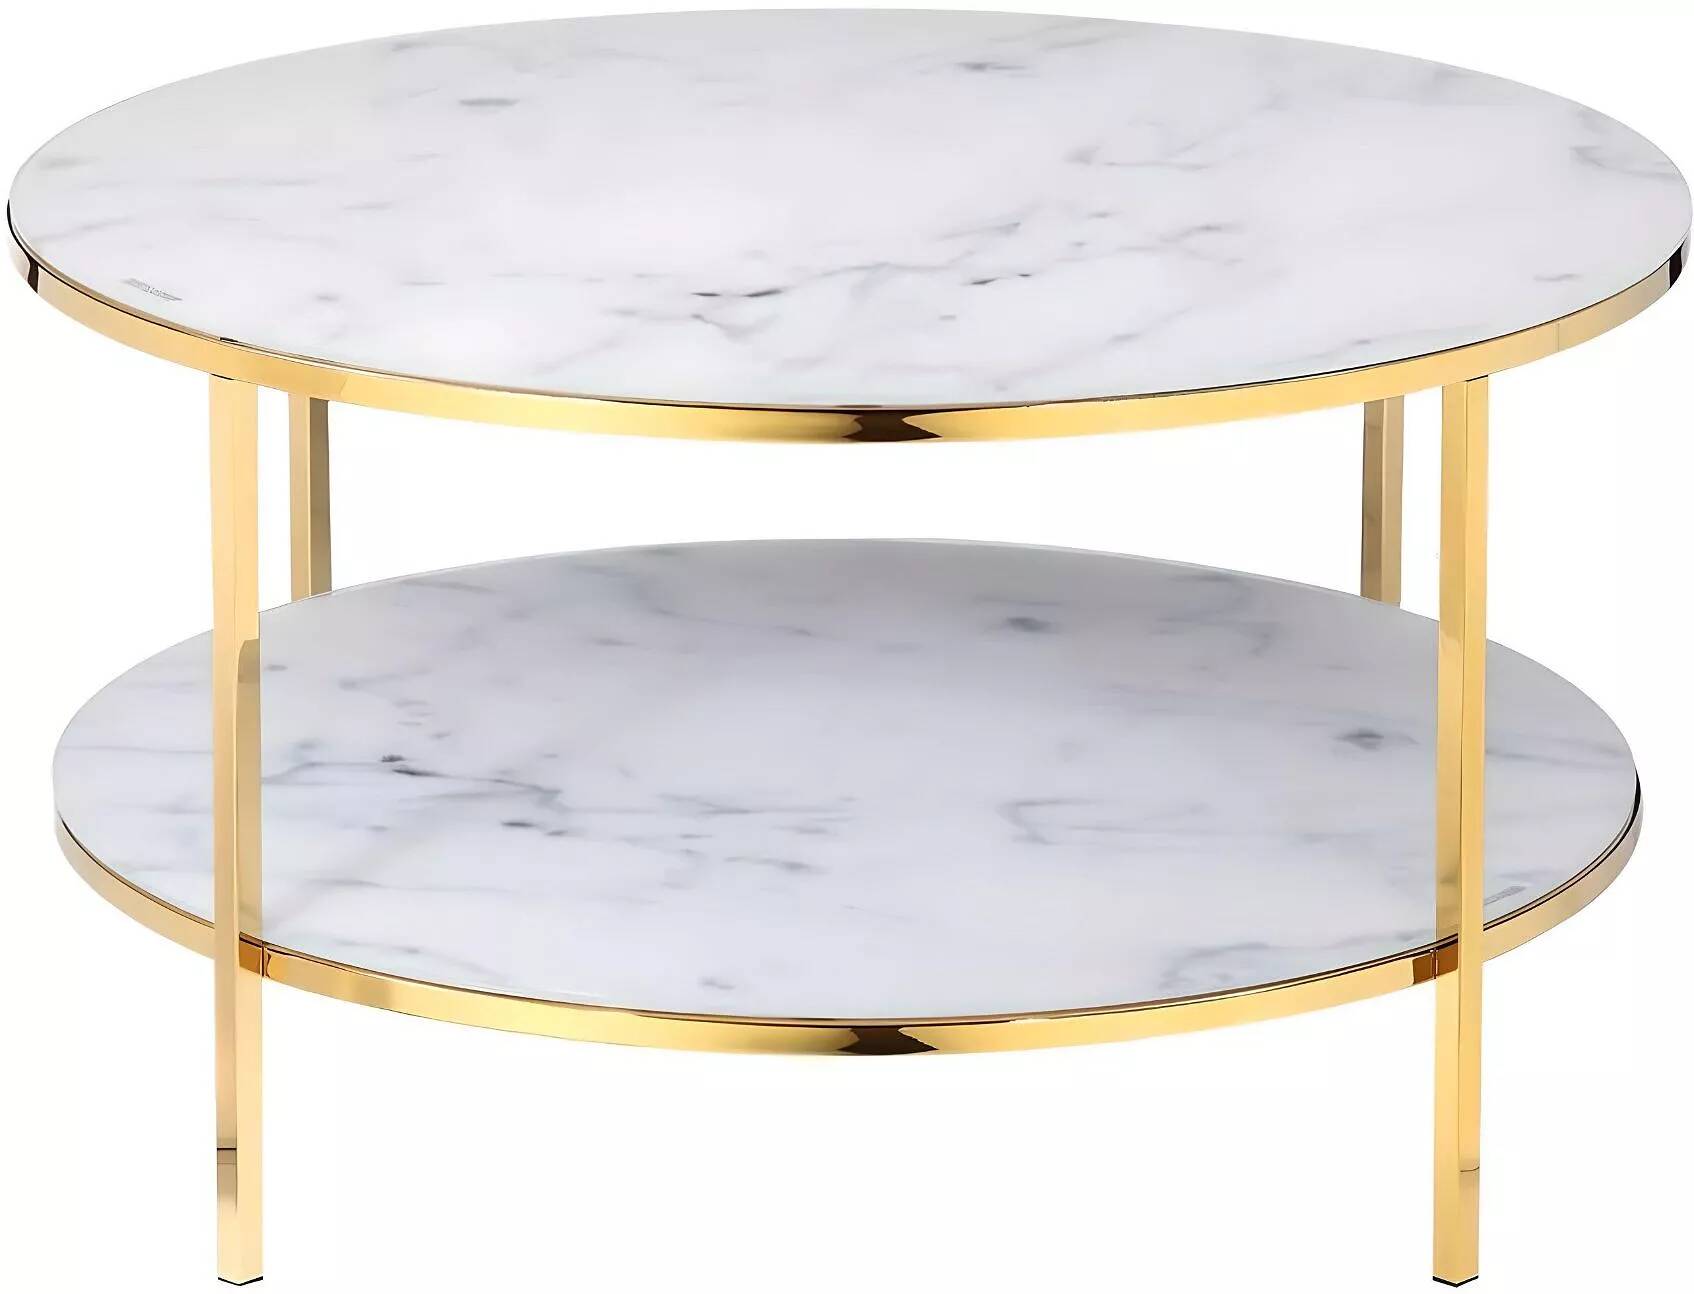 Table basse en verre double plateau aspect marbre blanc et métal doré Ø80